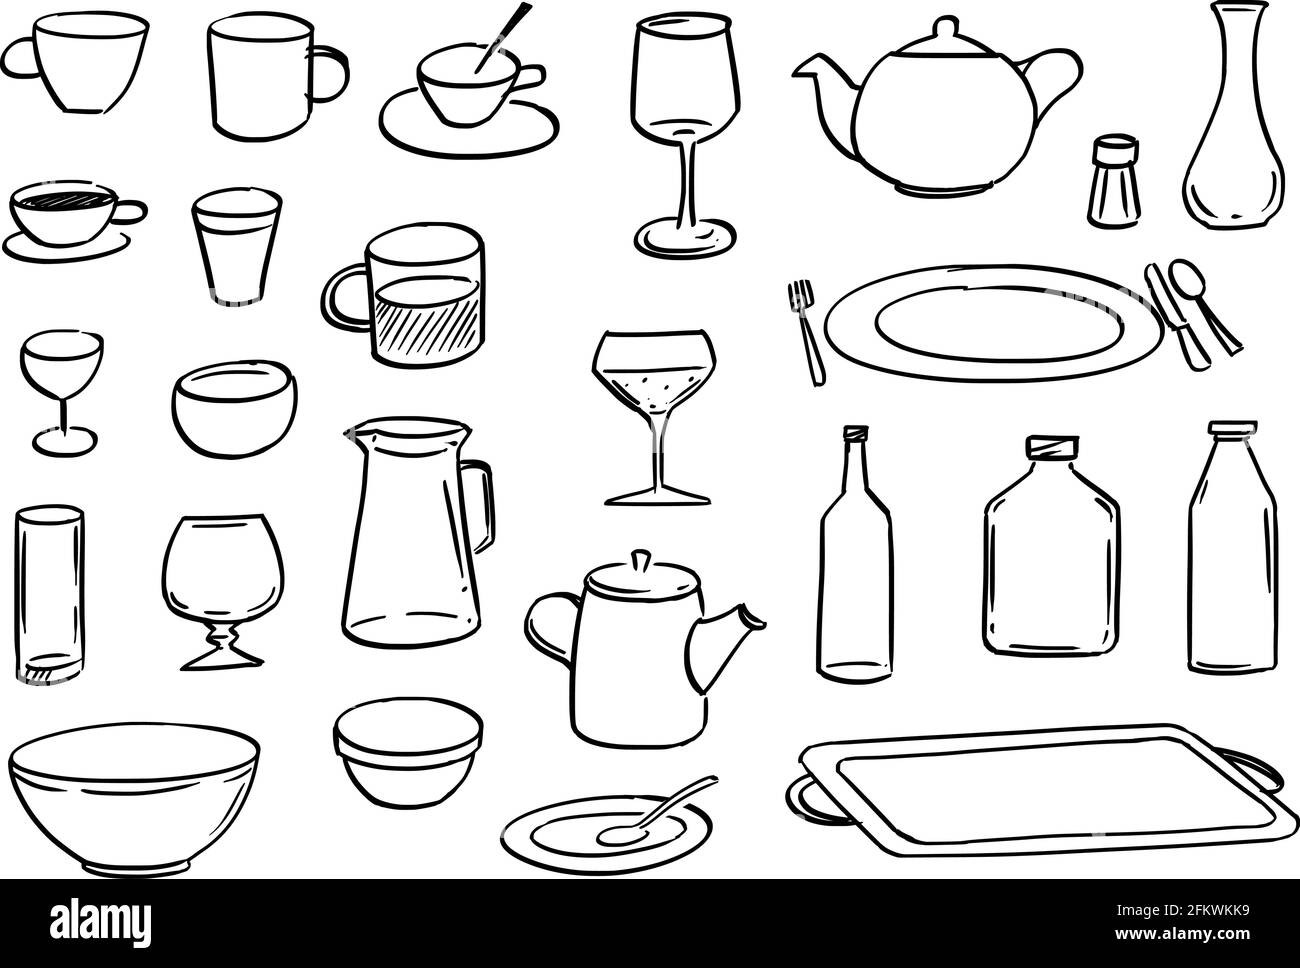 Geschirr- oder Geschirrset, skizzenhafte Cartoon-Handzeichnung Stock Vektor